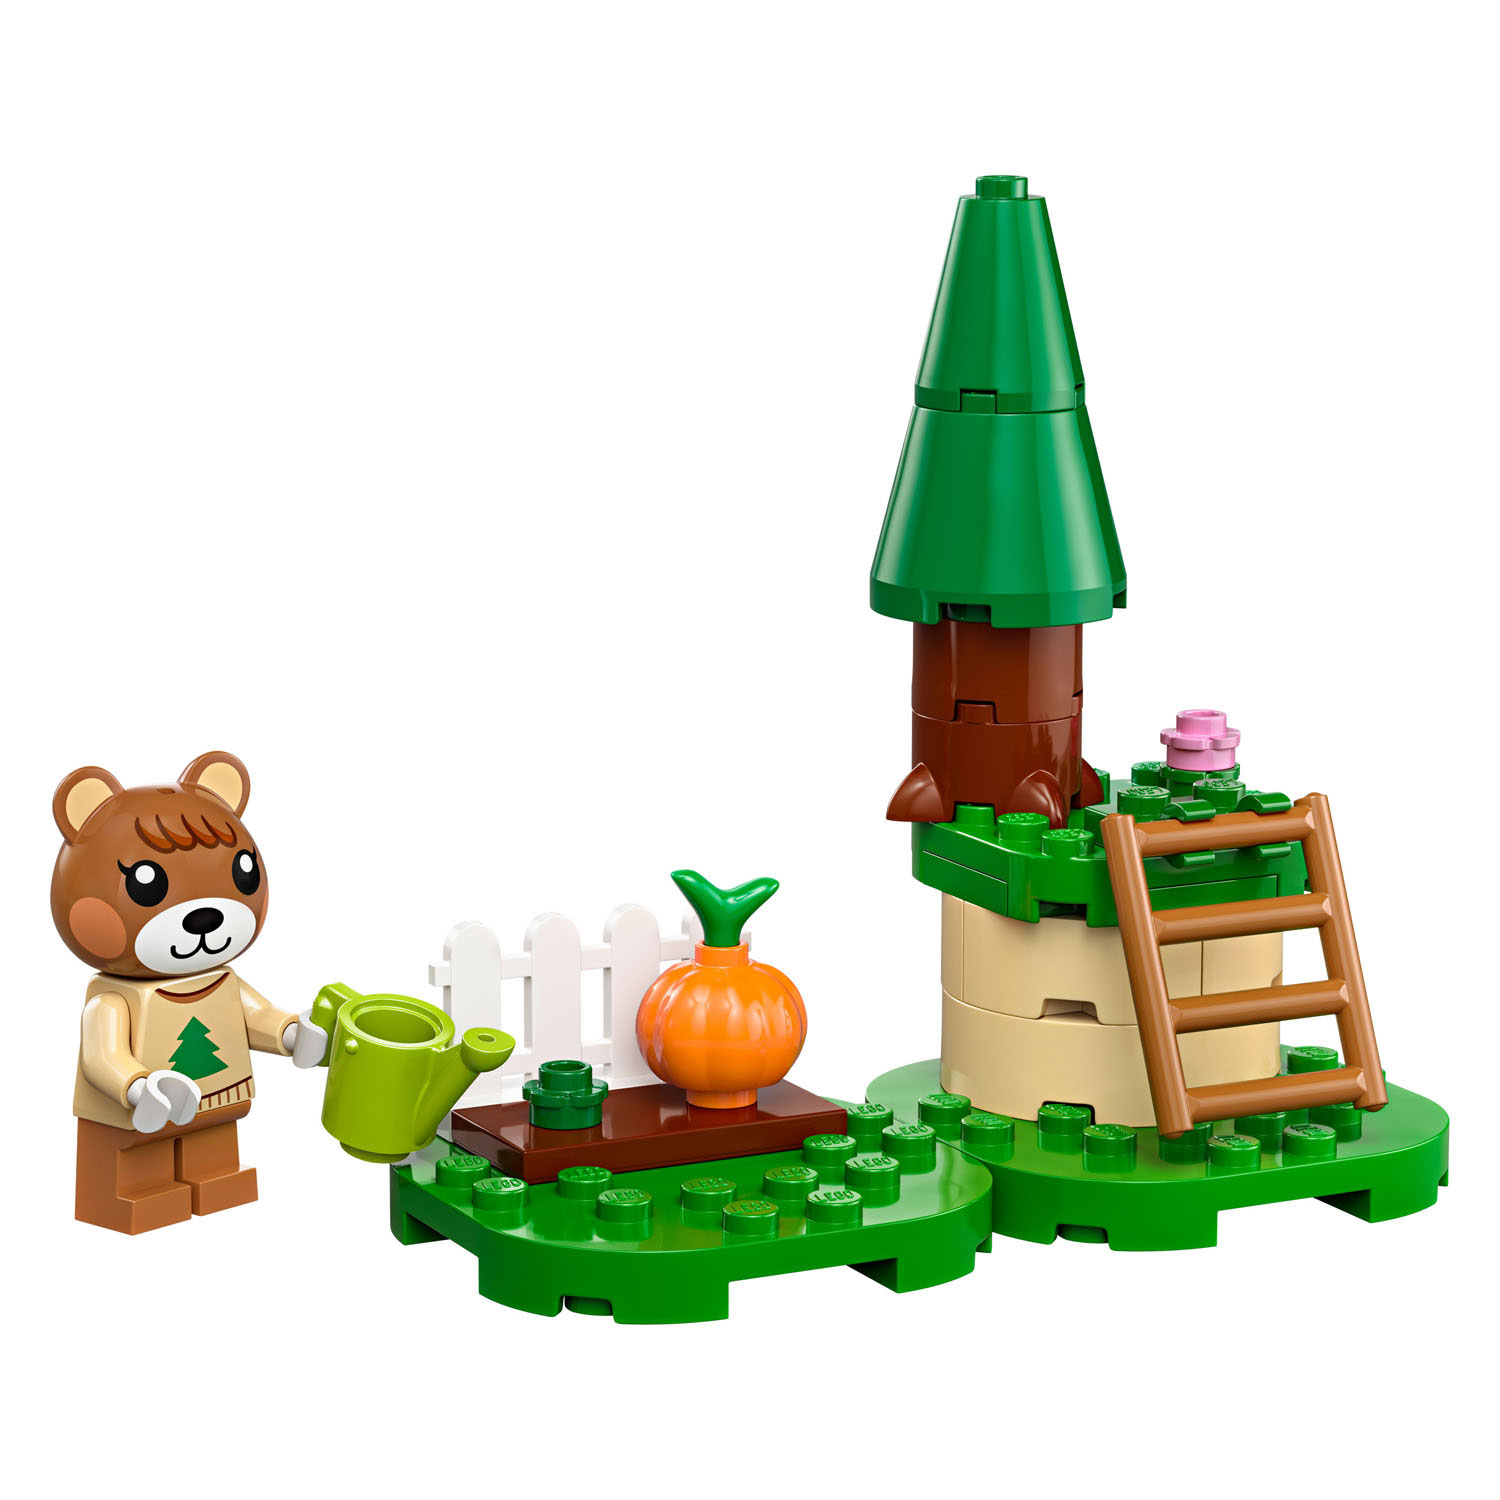 LEGO Animal Crossing 30662 Maple's Pompoentuin